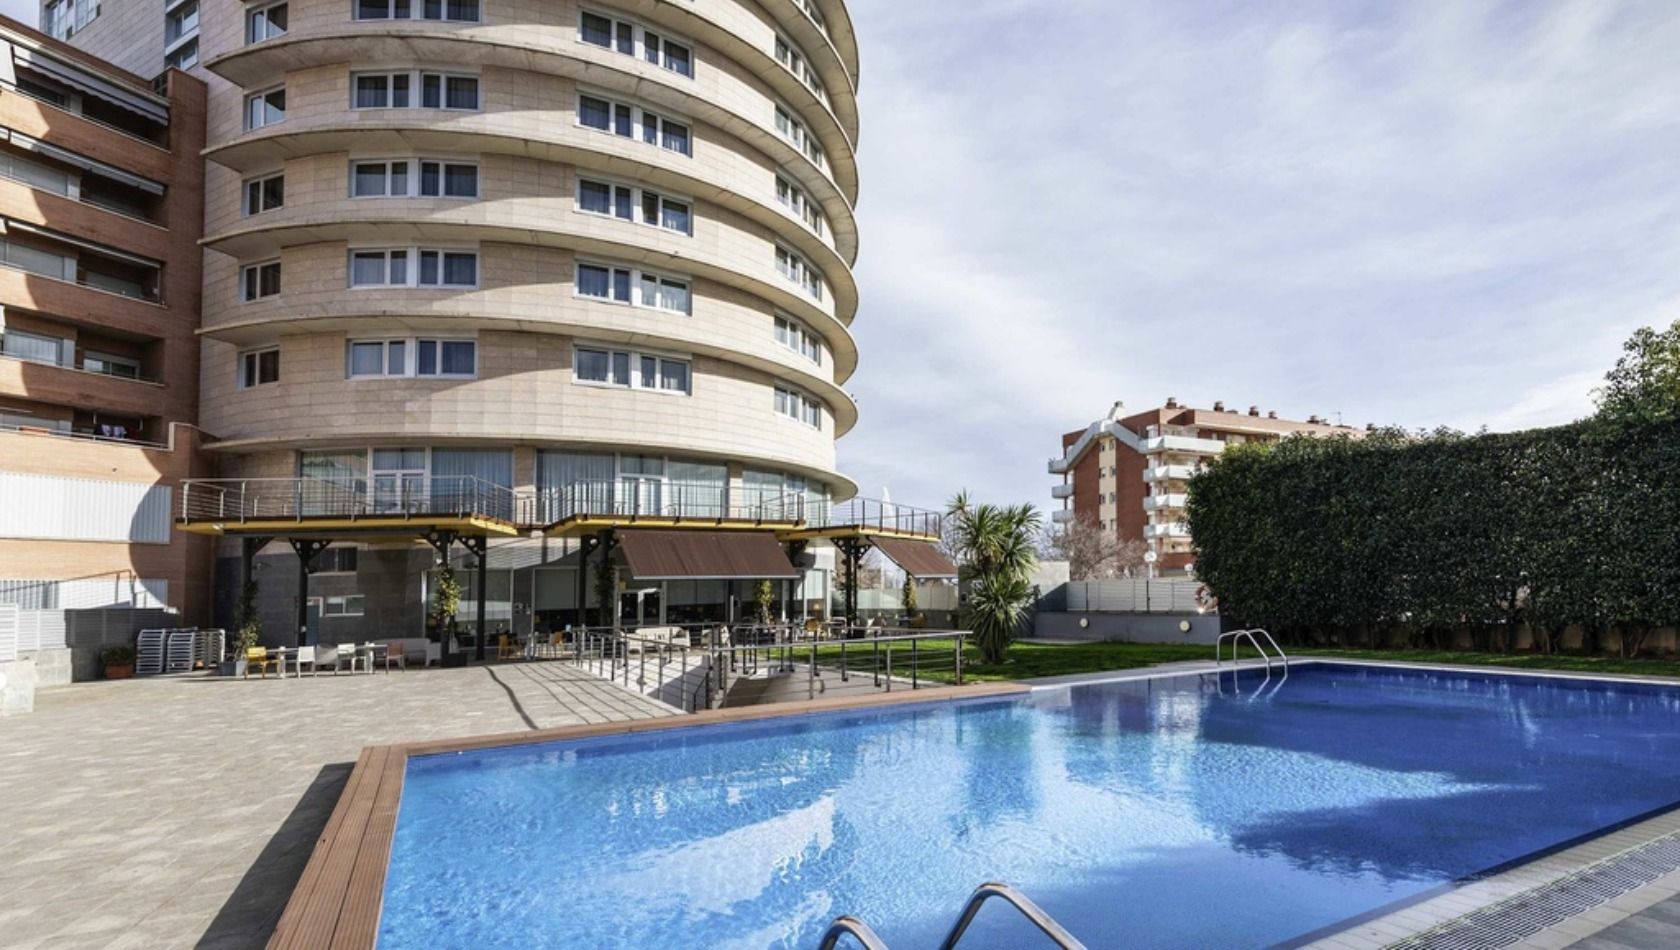 Das Atanea Aventura-Hotel, das PortAventura World in der Saison 2022 erworben hat